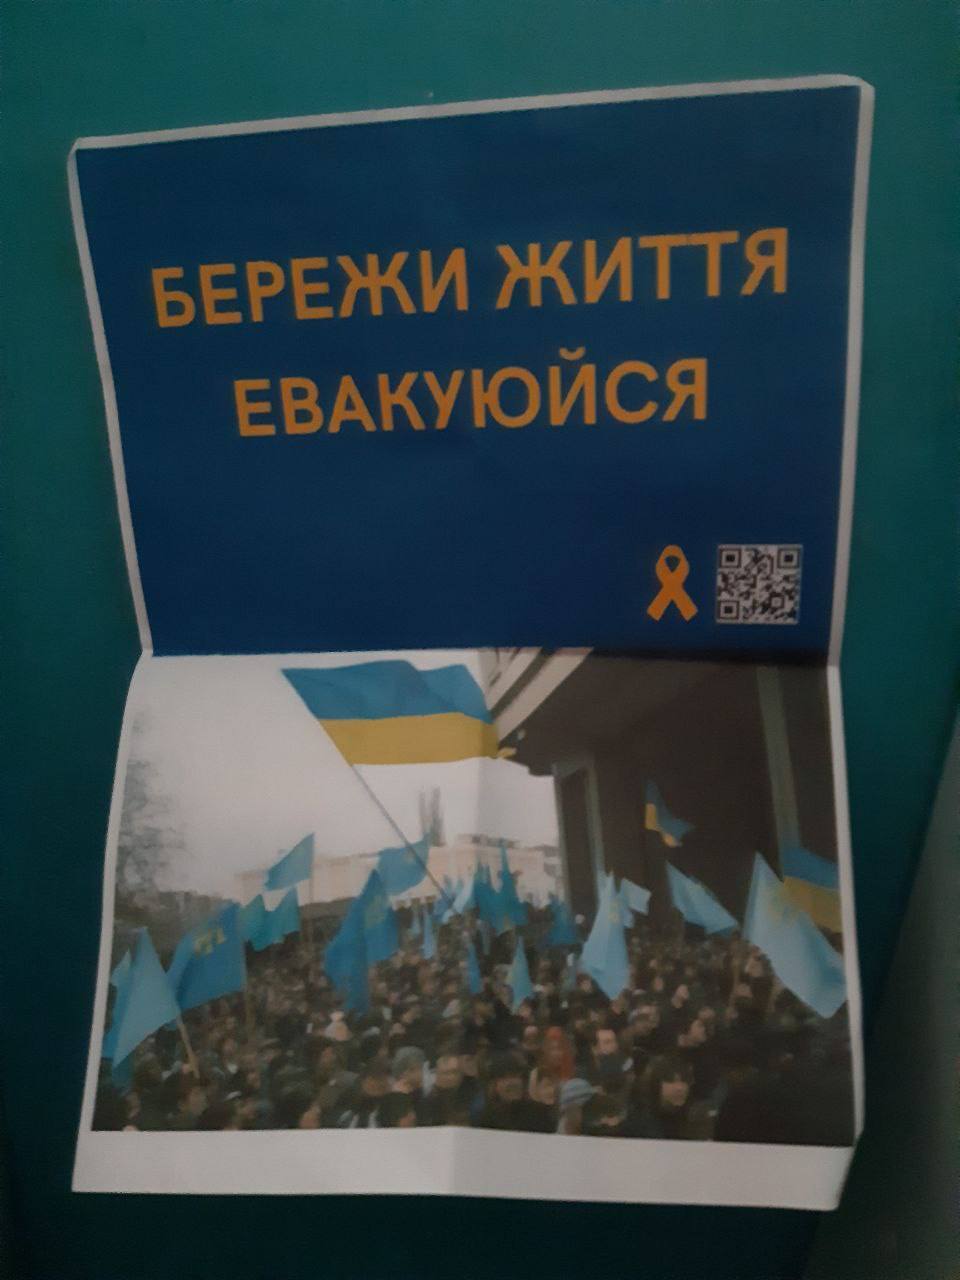 Листовка украинского партизанского движения